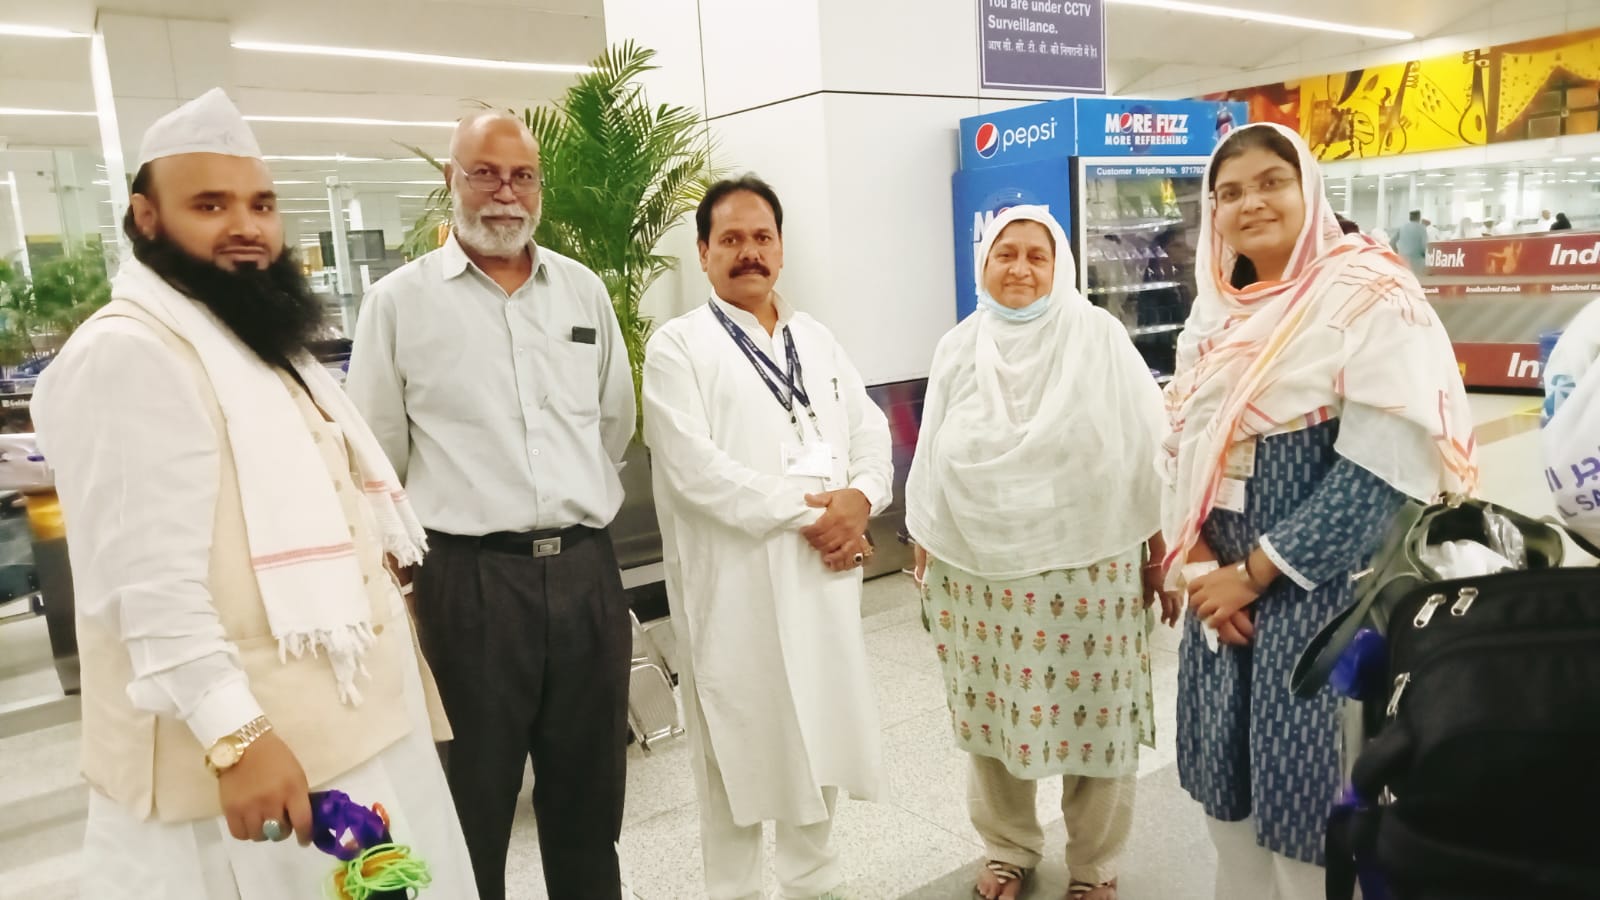 हज के मुकद्दस सफर से आने वाले हाजियों की 6वीं फ्लाइट पहुंची दिल्ली, एयरपोर्ट पर हाजियों का किया गया स्वागत | New India Times